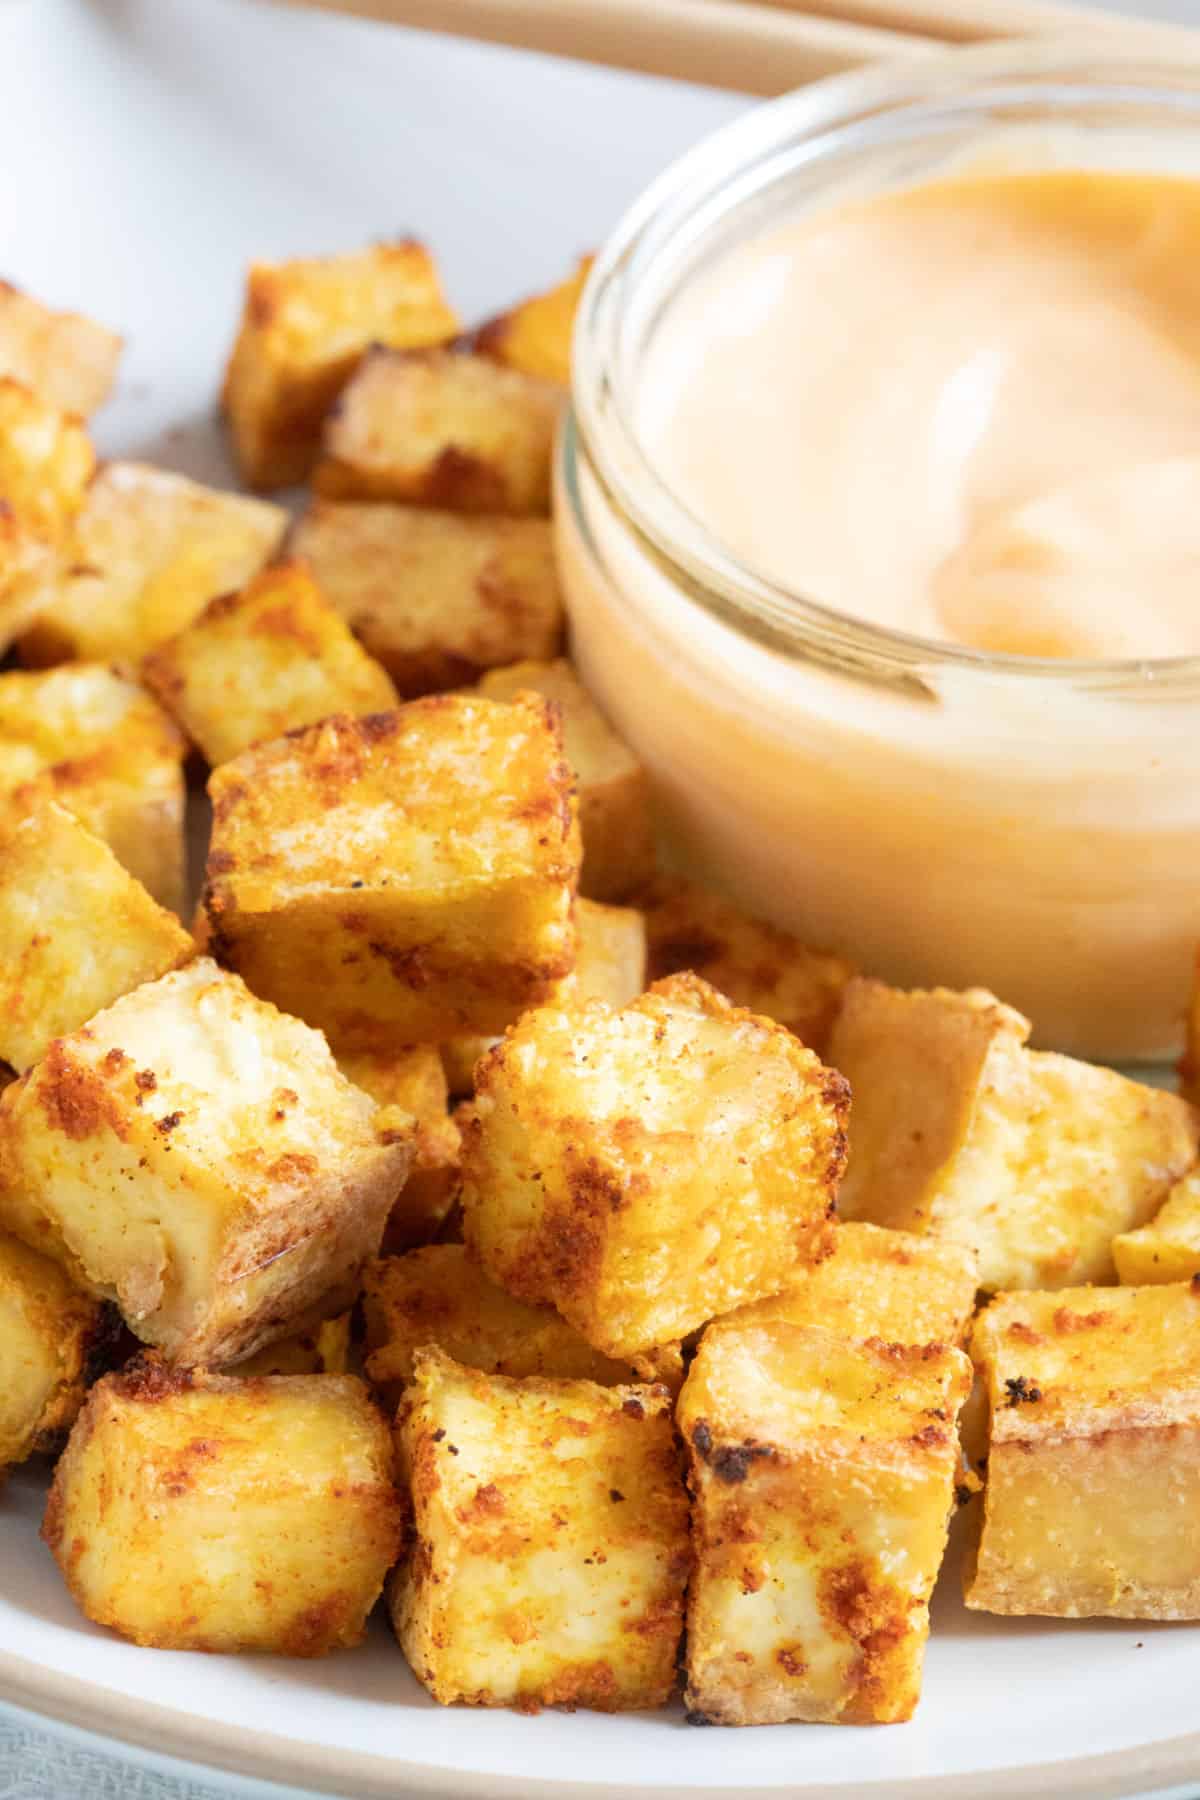 Crispy golden air fryer tofu cubes on a plate.